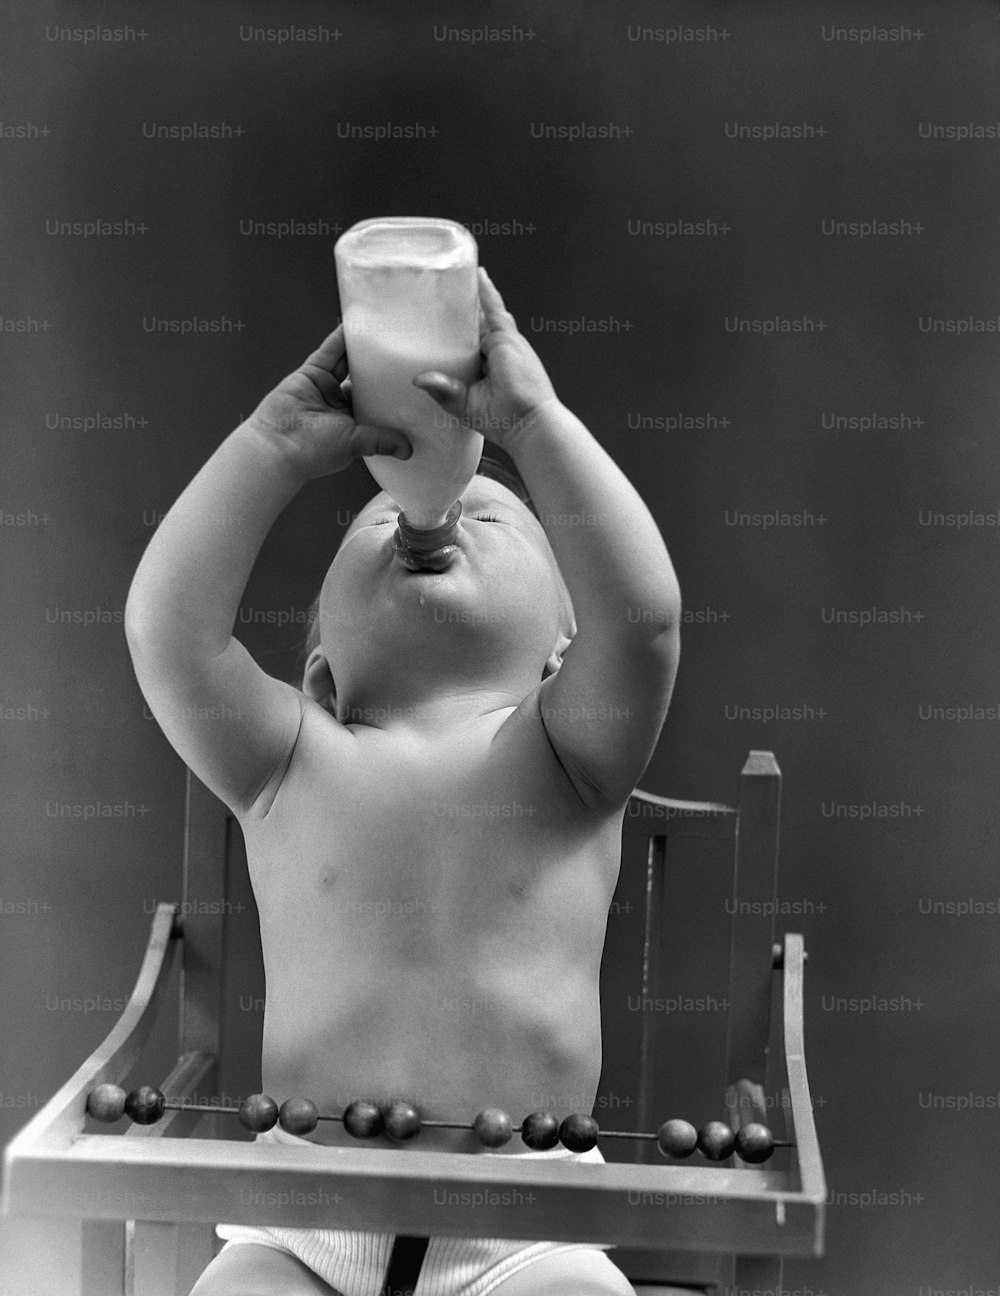 STATI UNITI - 1940 CIRCA: Bambino seduto nel seggiolone, testa inclinata all'indietro, che beve dal biberon del latte.